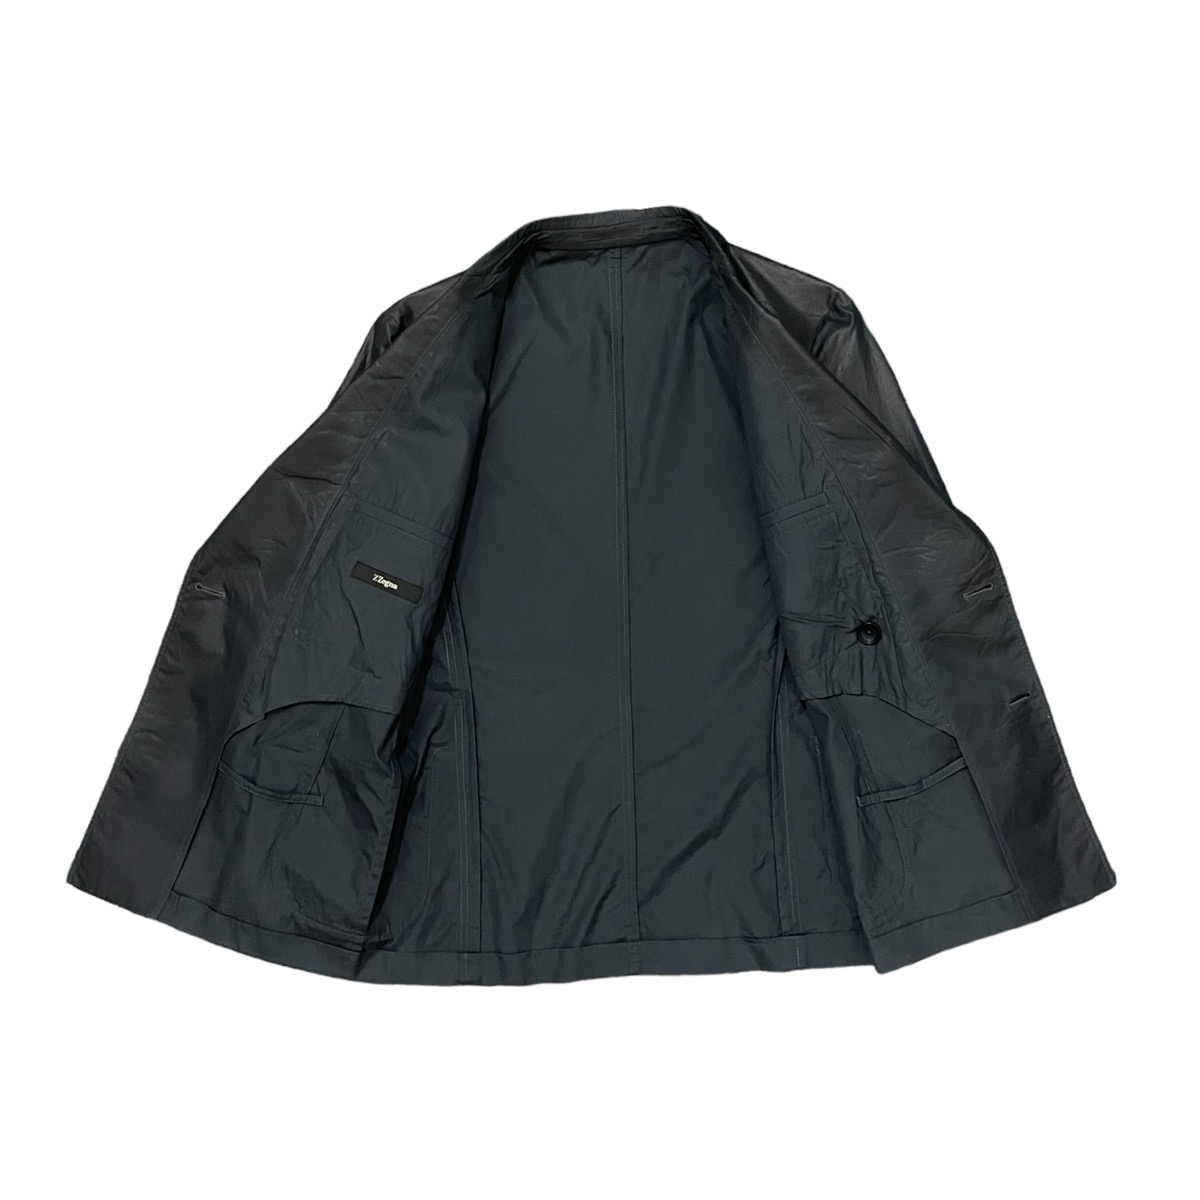 Z Zegna button blazer jacket rayon jacket - 6